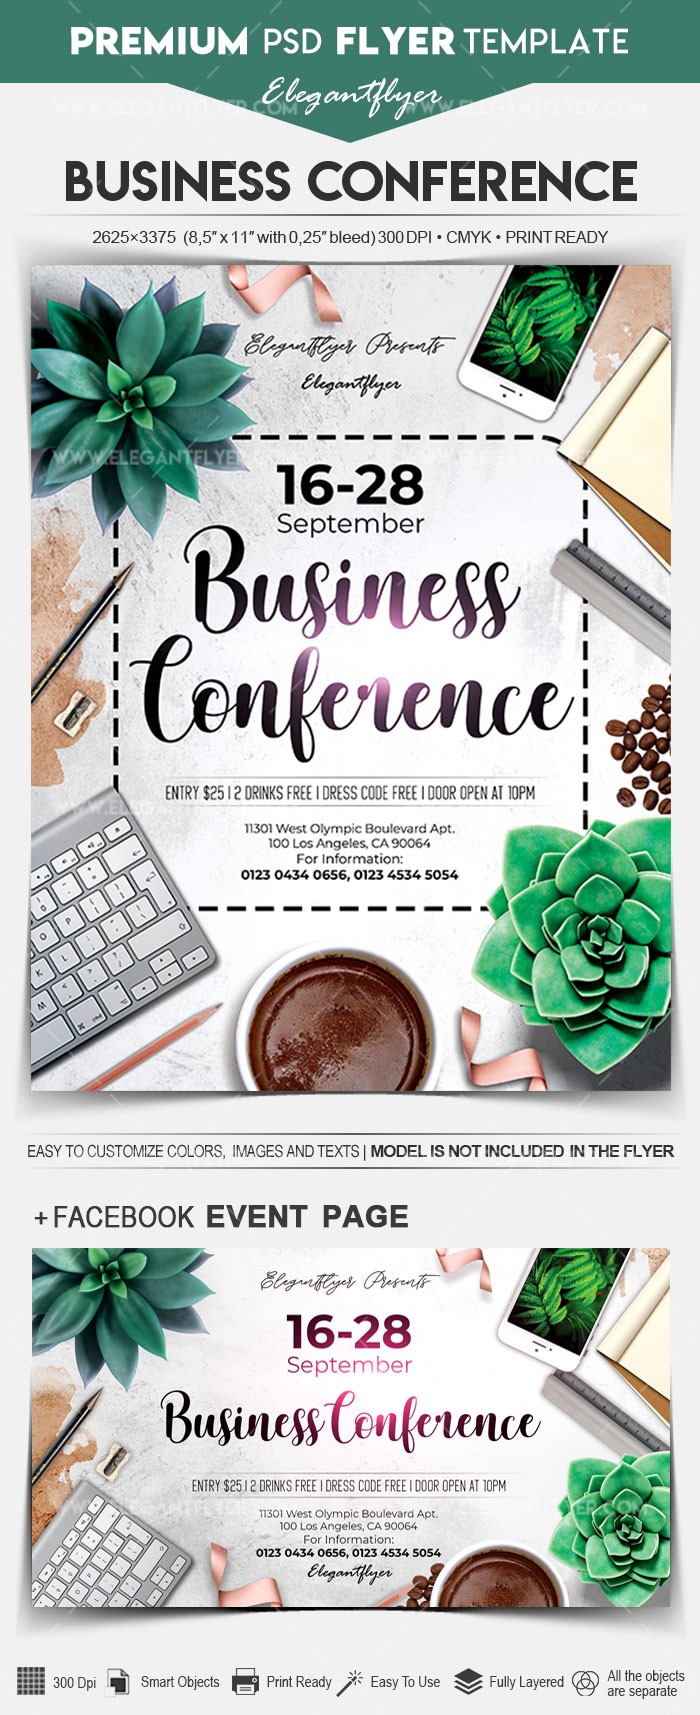 Konferencja biznesowa by ElegantFlyer